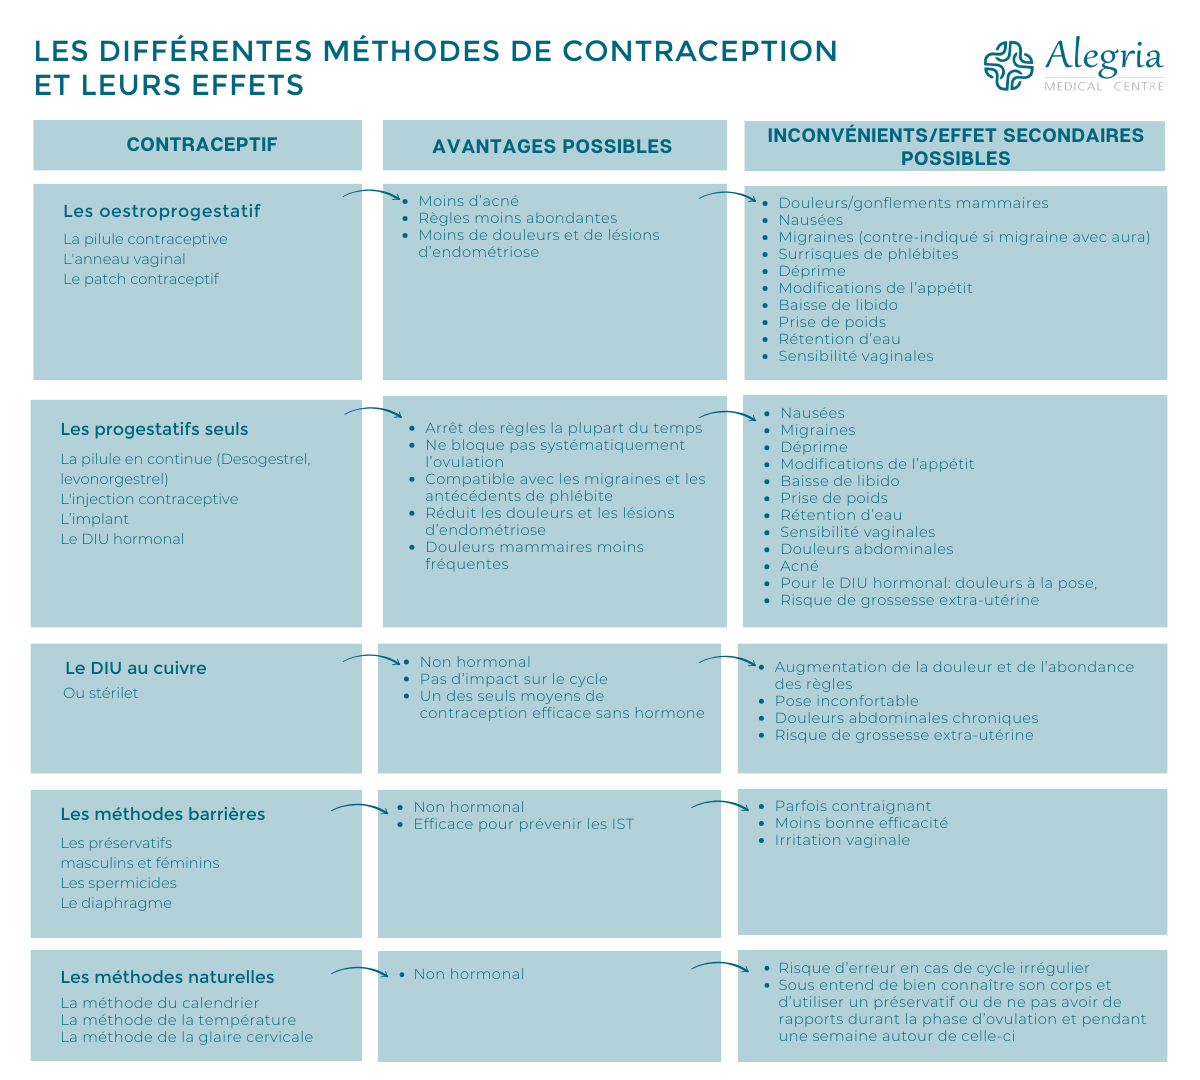 Tableau comparatif methode contraception et leurs effets